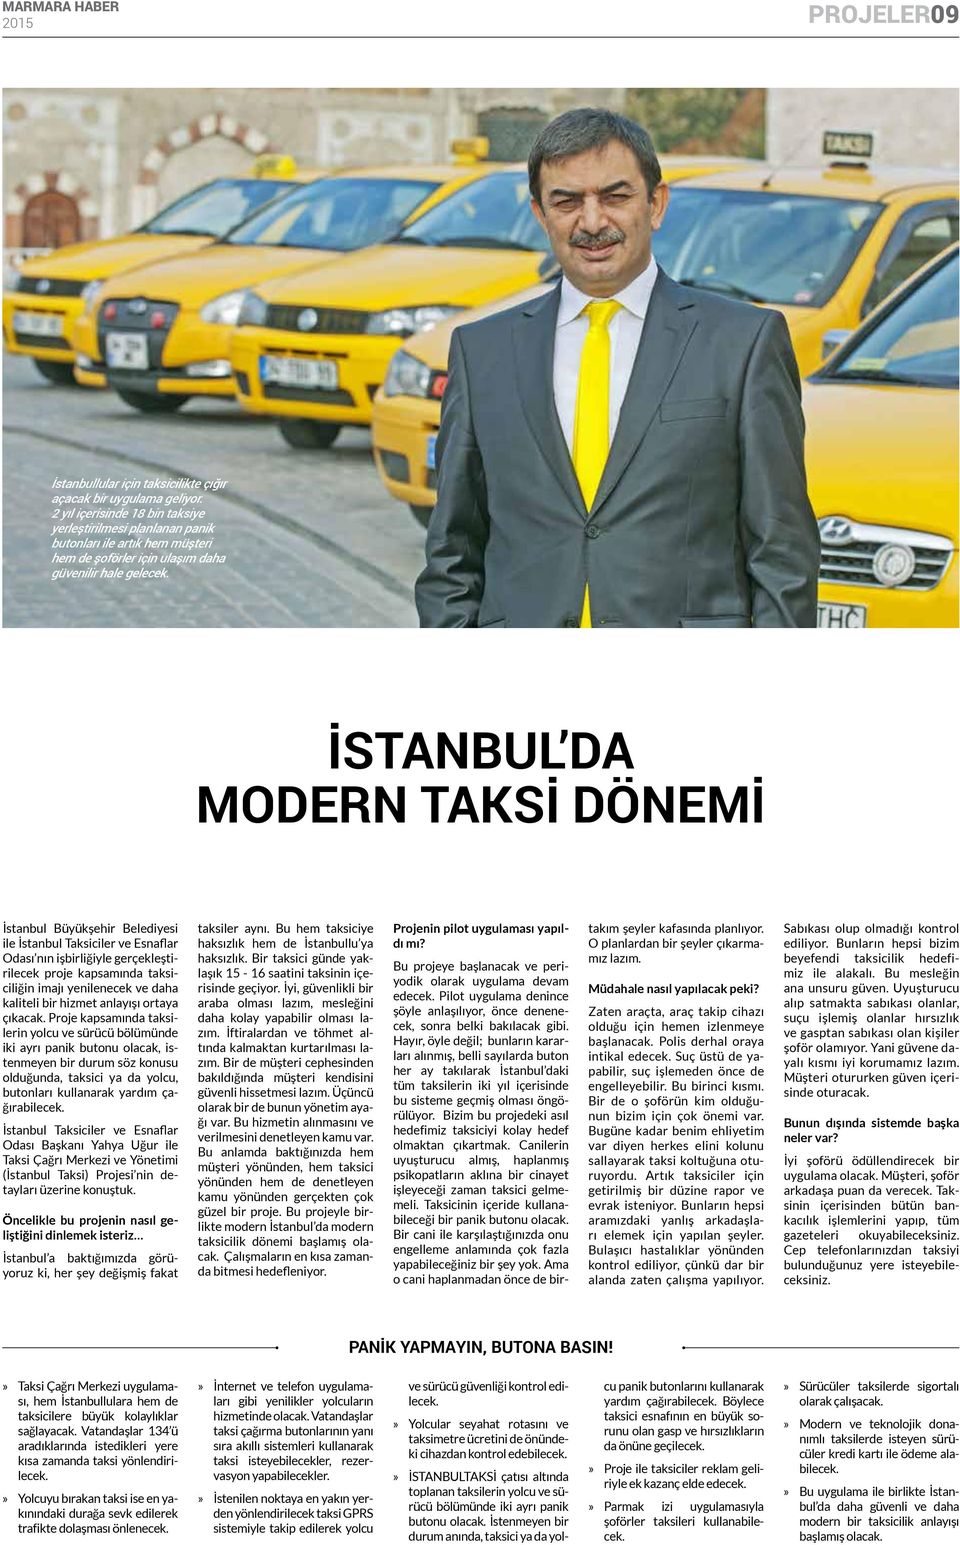 İSTANBUL DA MODERN TAKSİ DÖNEMİ İstanbul Büyükşehir Belediyesi ile İstanbul Taksiciler ve Esnaflar Odası nın işbirliğiyle gerçekleştirilecek proje kapsamında taksiciliğin imajı yenilenecek ve daha